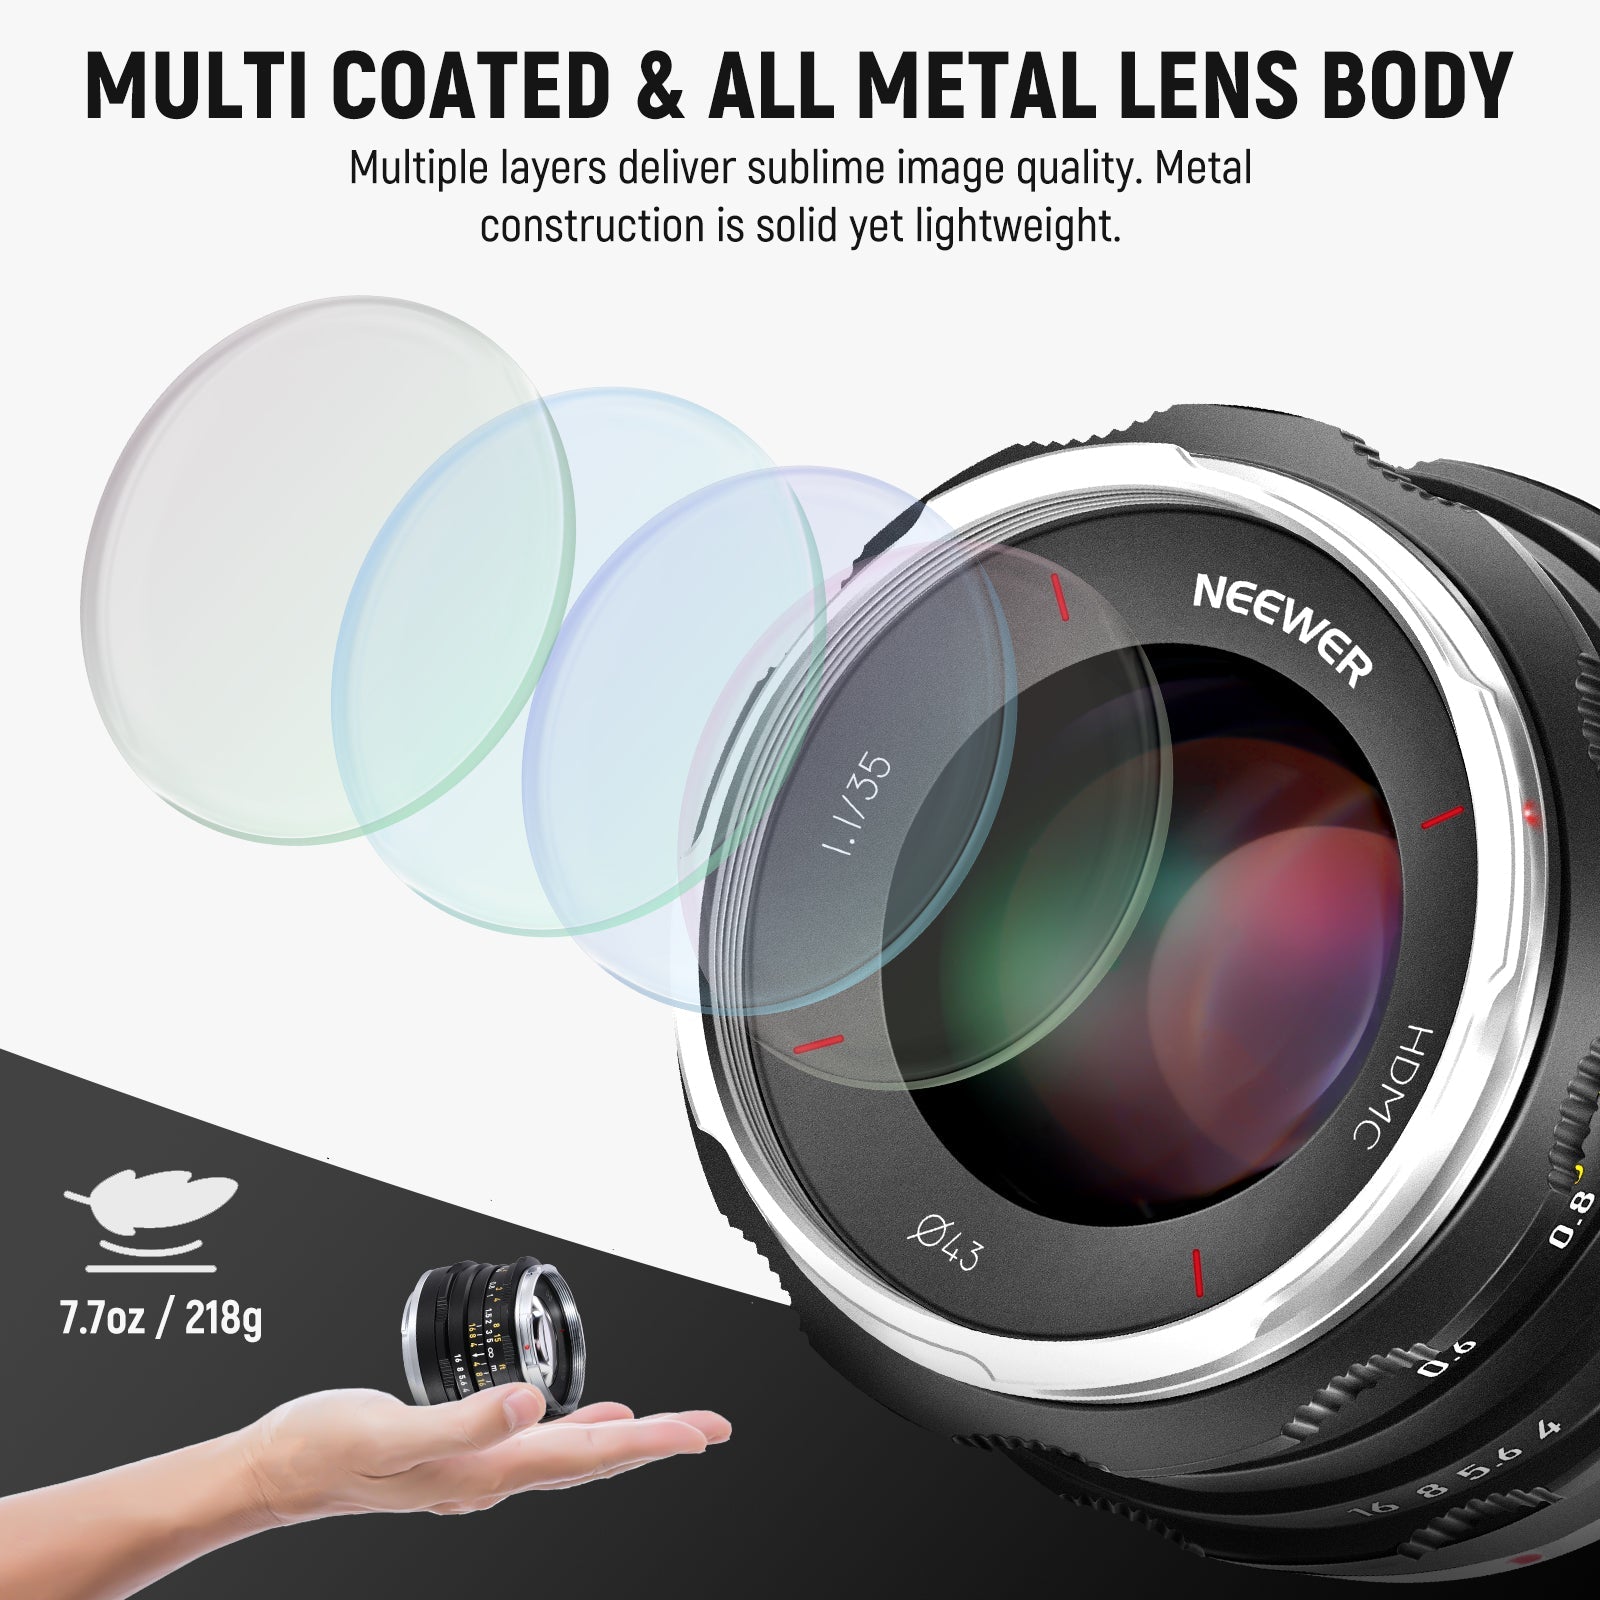 NEEWER 35mm f1.1 APS-C Large Aperture Manual Focus Prime Lens